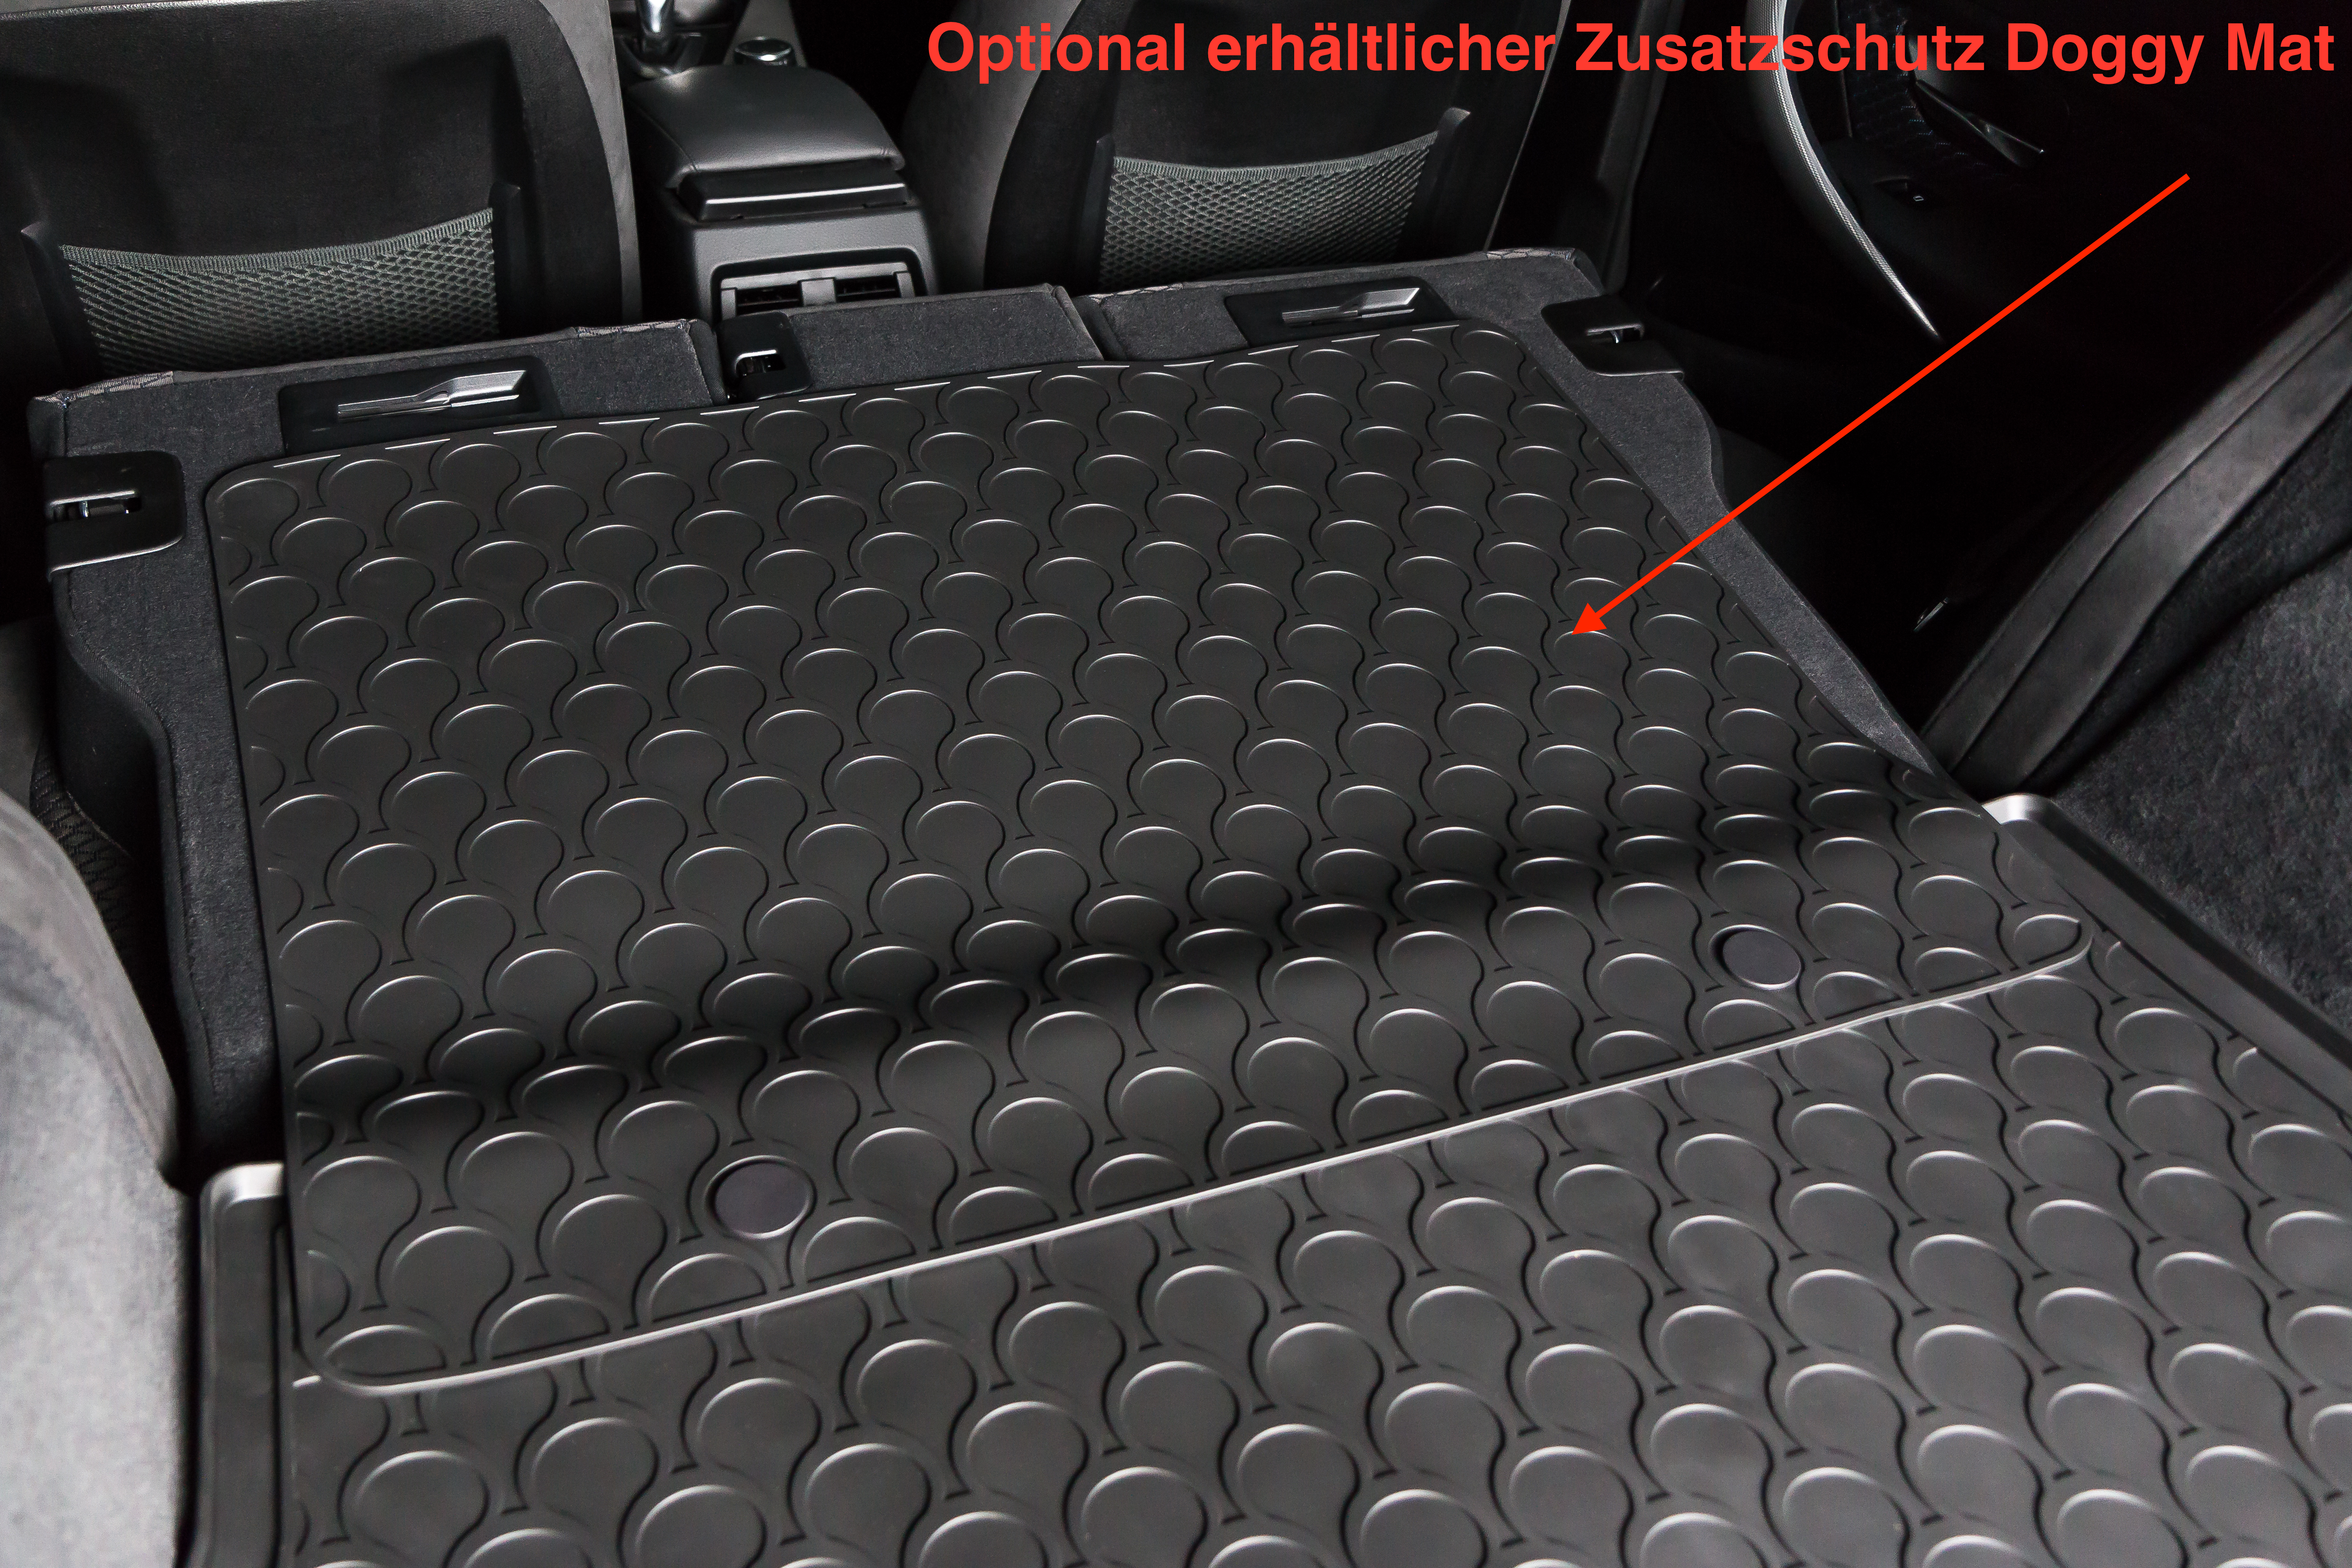 Rubbasol (Gummi) Kofferraumwanne passend für Audi A6 (4F) Avant